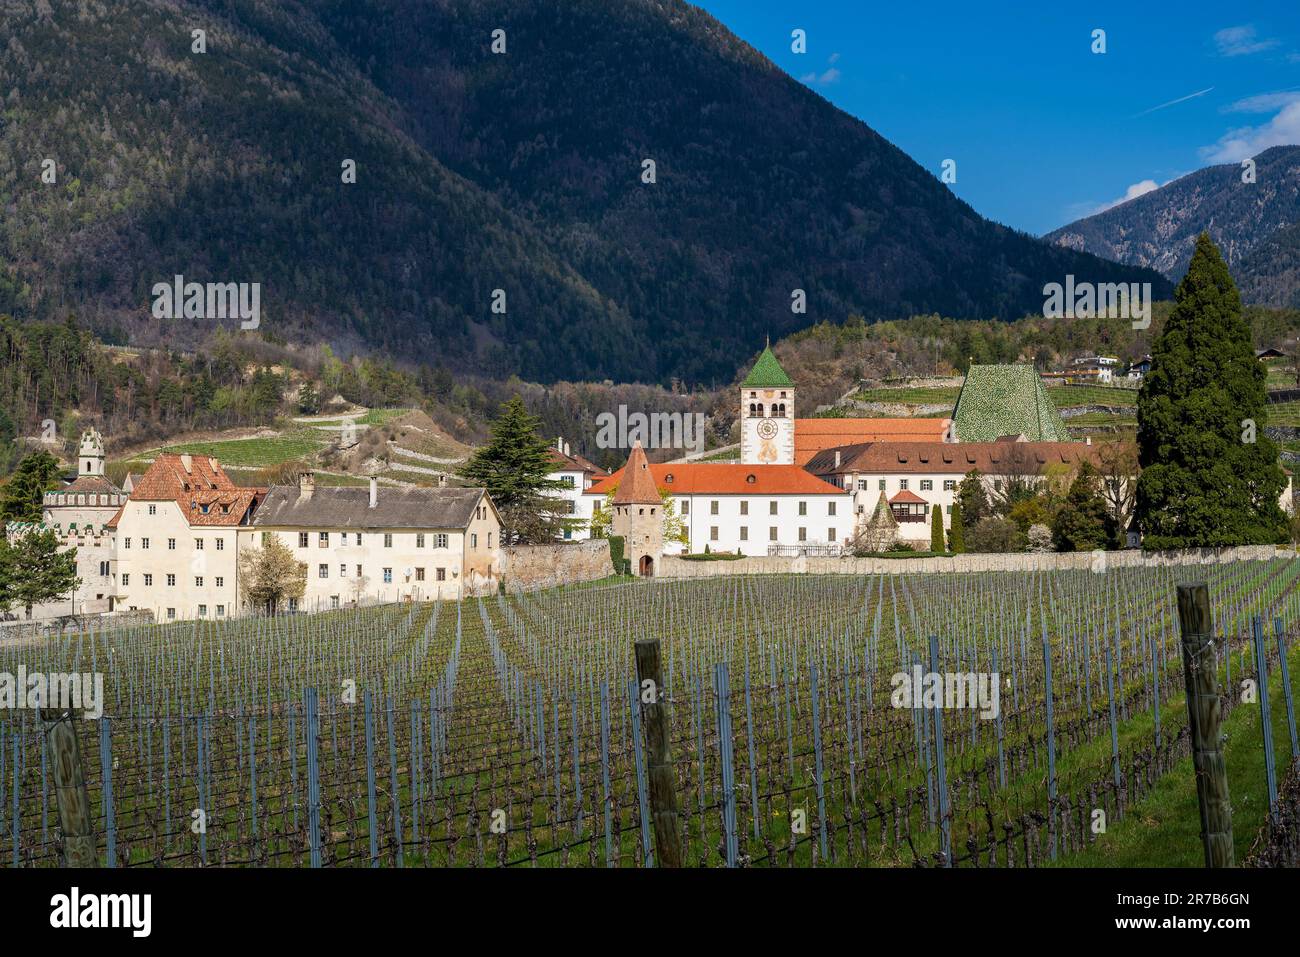 Neustift Abbey (Abbazia di Novacella), Neustift-Novacella, Trentino-Alto Adige/Sudtirol, Italy Stock Photo